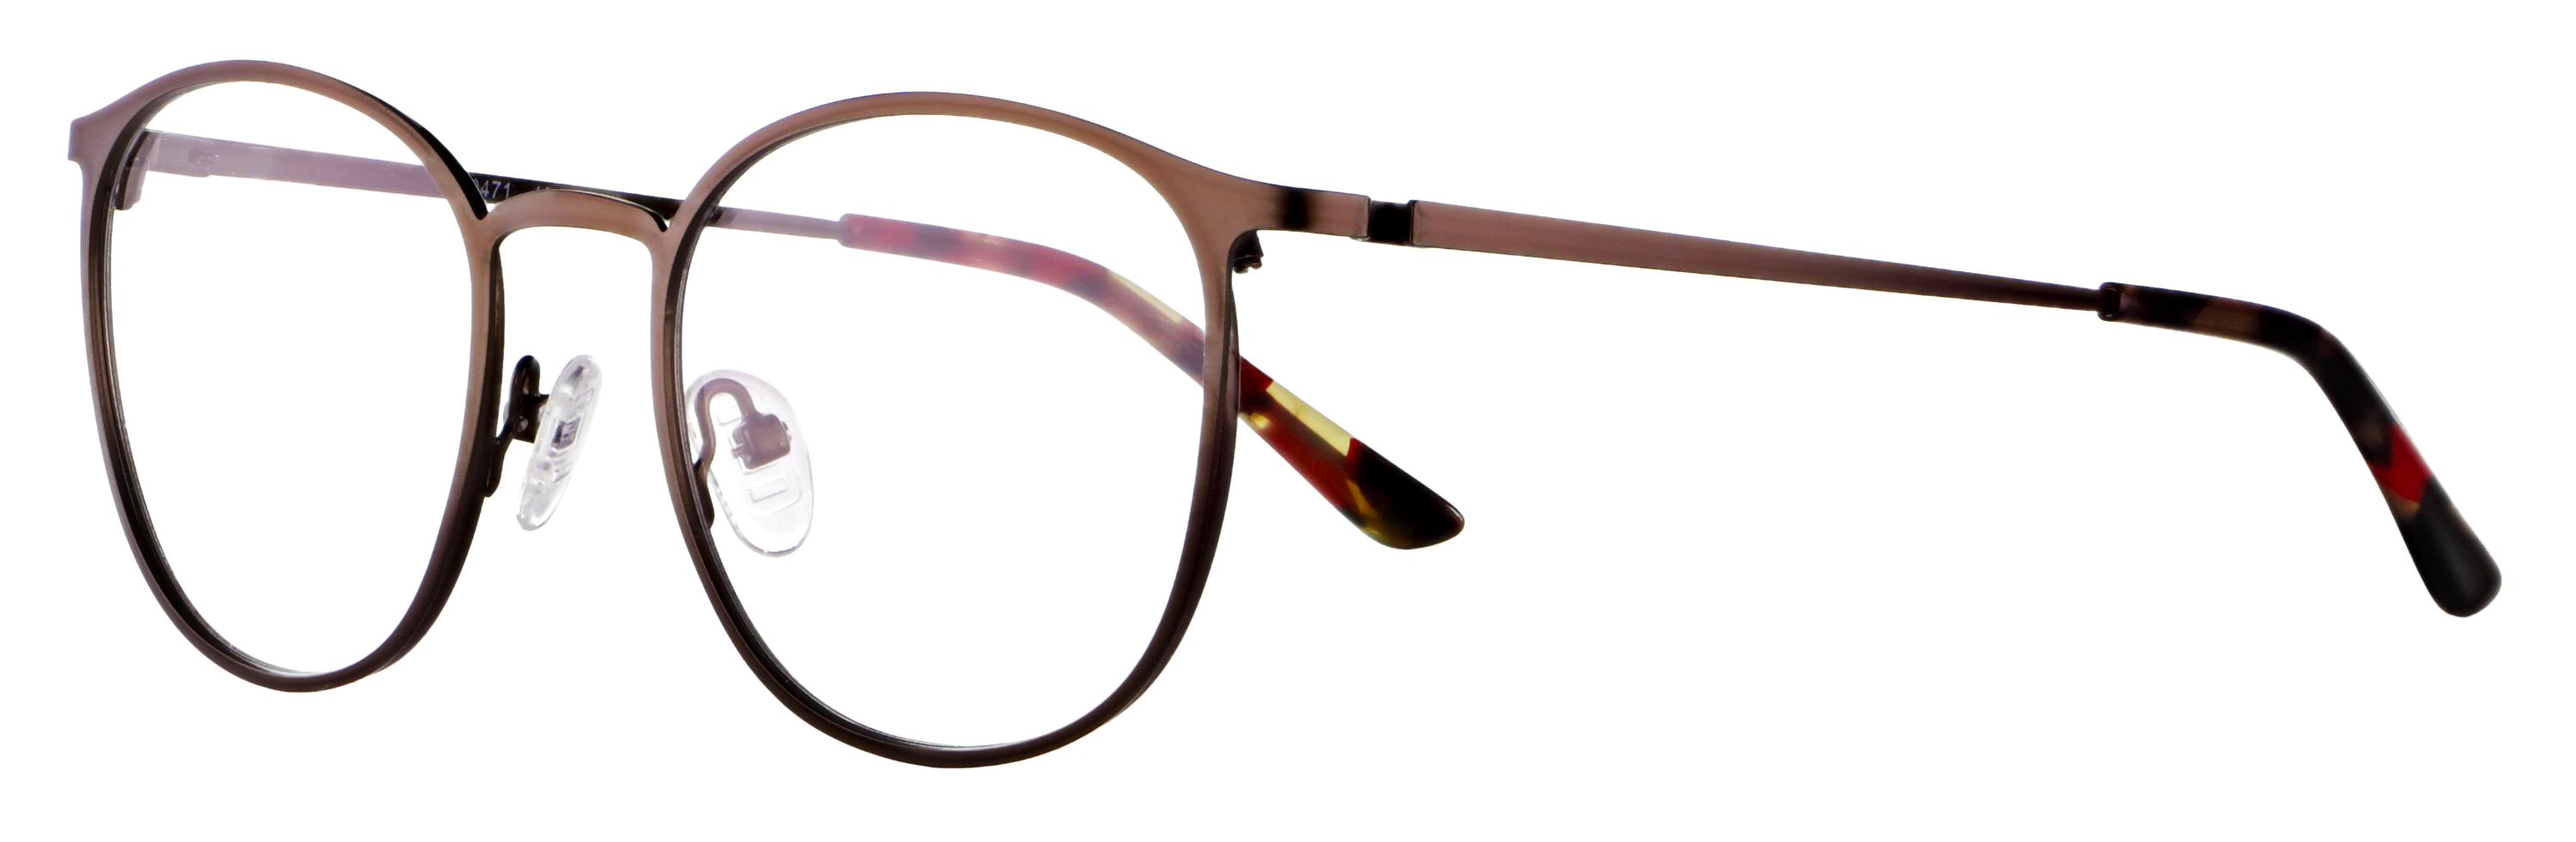 Das Bild zeigt die Korrektionsbrille 140471 von der Marke Abele Optik in olivgrün.